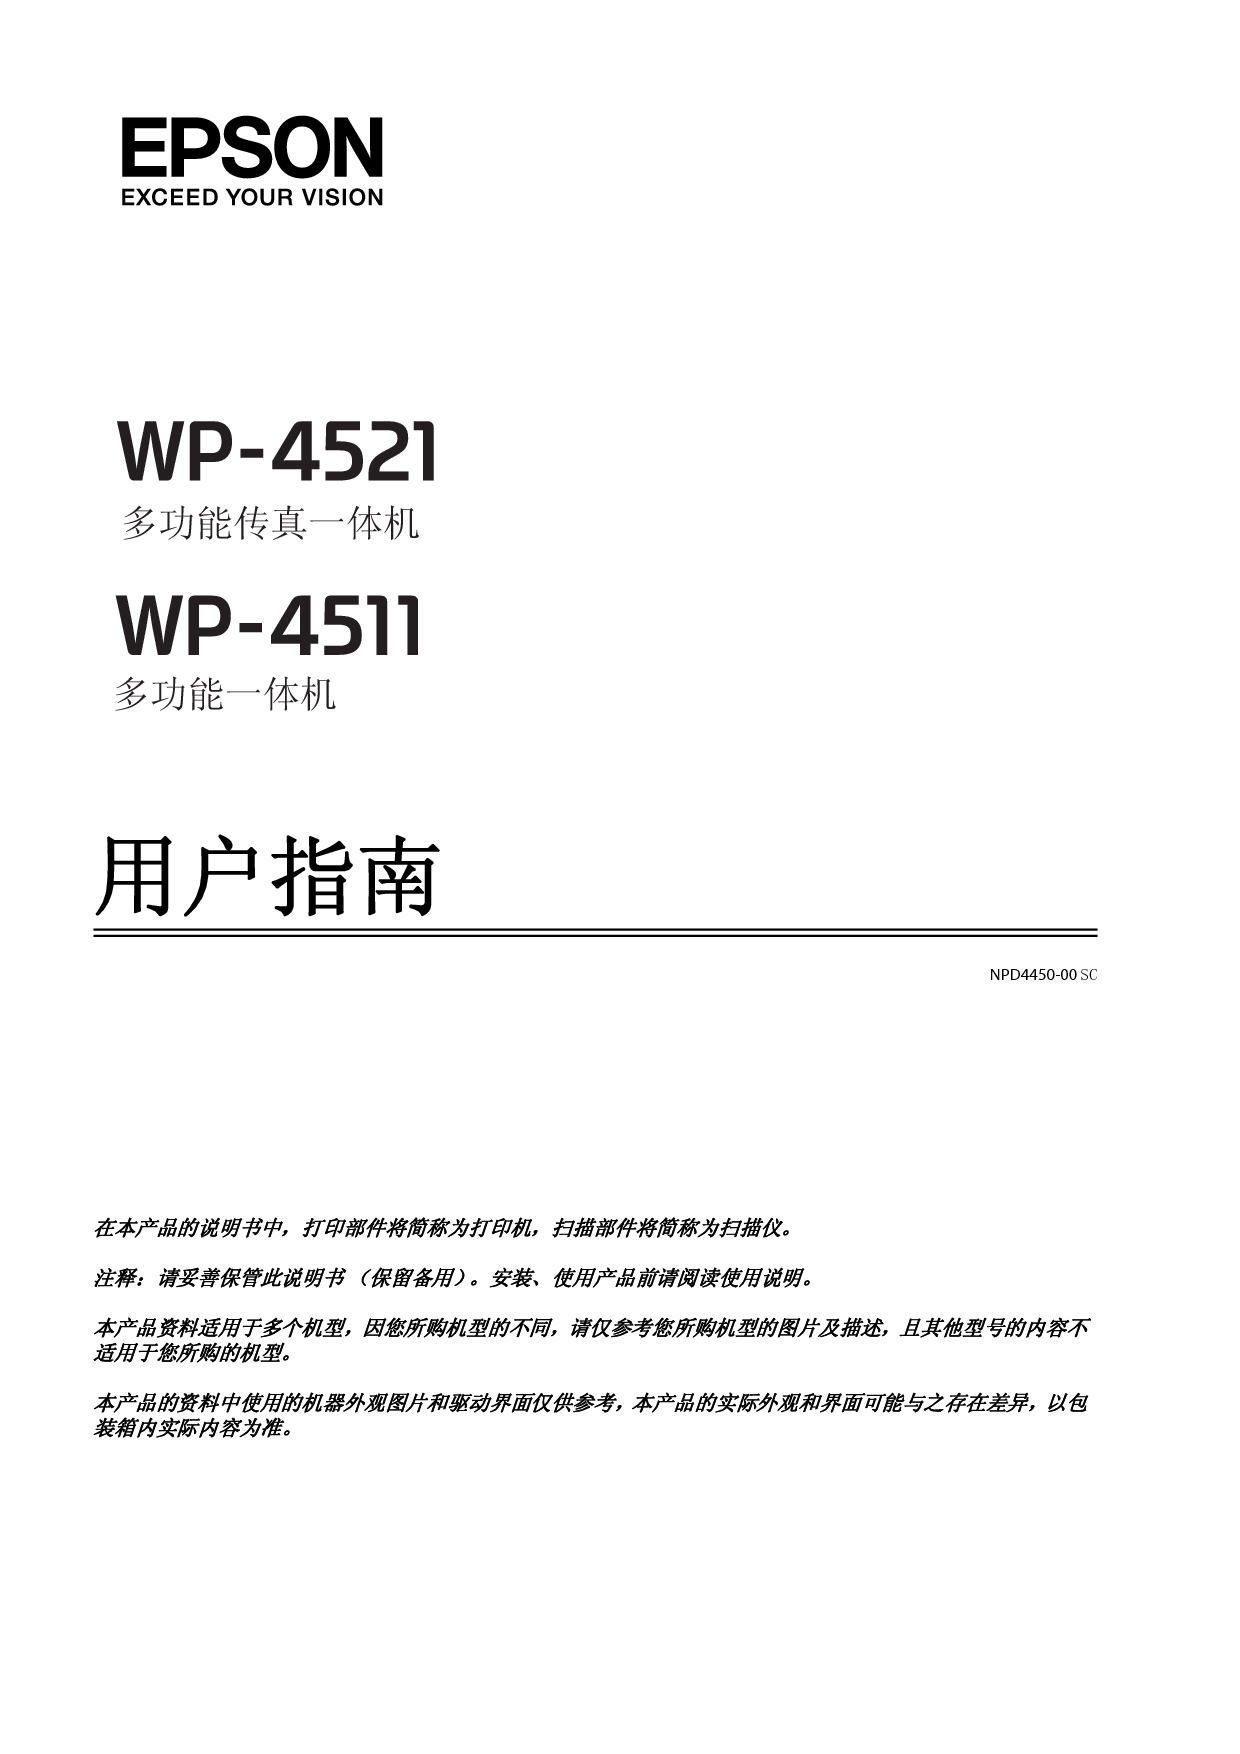 爱普生 Epson WP-4511 用户指南 封面